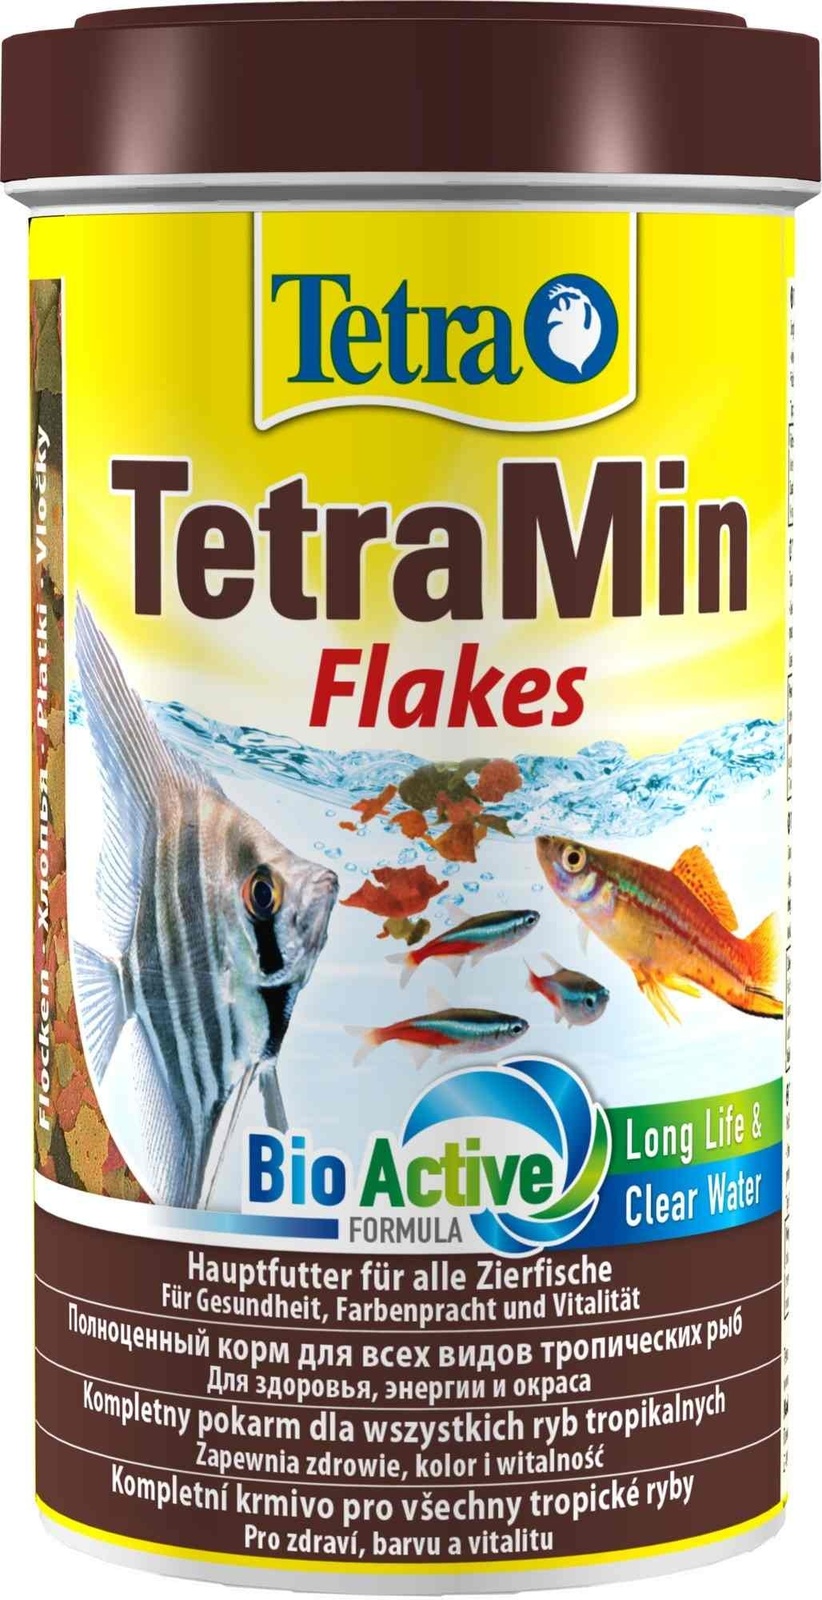 Tetra (корма) Tetra (корма) корм для всех видов тропических рыб. хлопья TetraMin Flakes (100 г) tetra корма tetra корма для золотых и холодноводных рыб хлопья 12 г